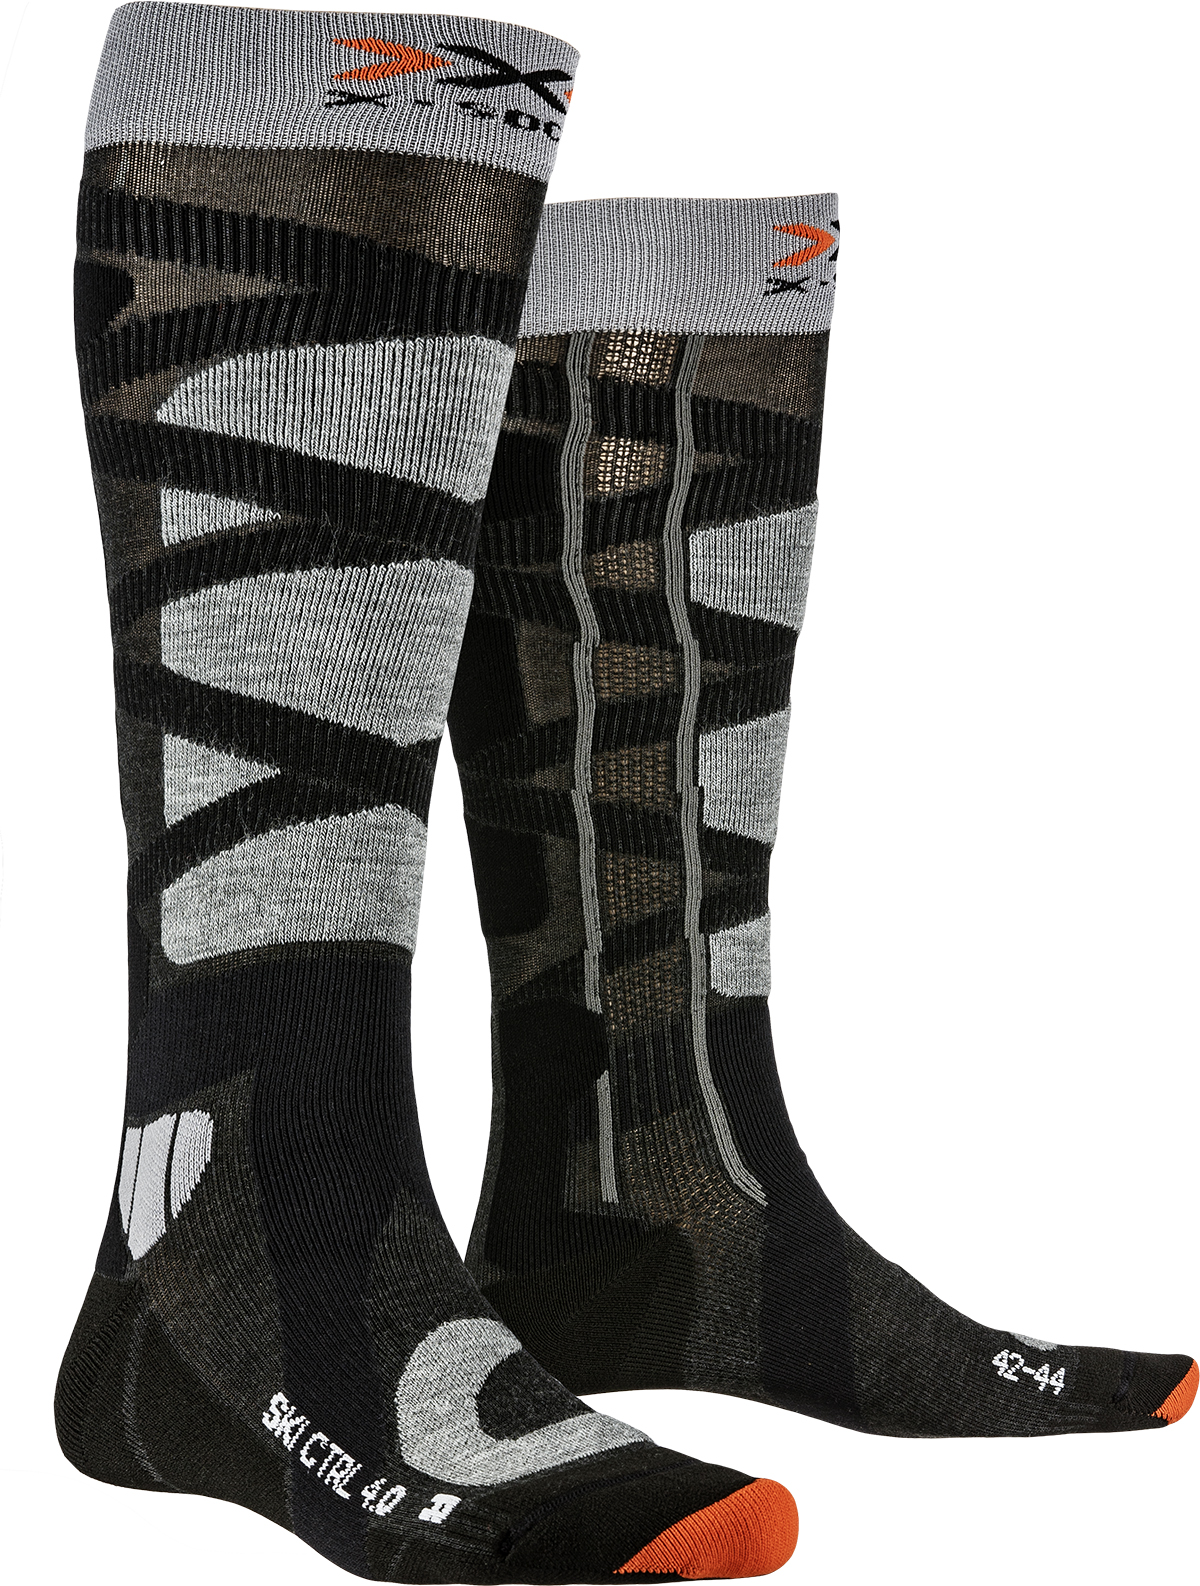 Спортивні шкарпетки X-Socks Ski Control 4.0 Anthracite Melange/Stone Grey Melange (42-44)